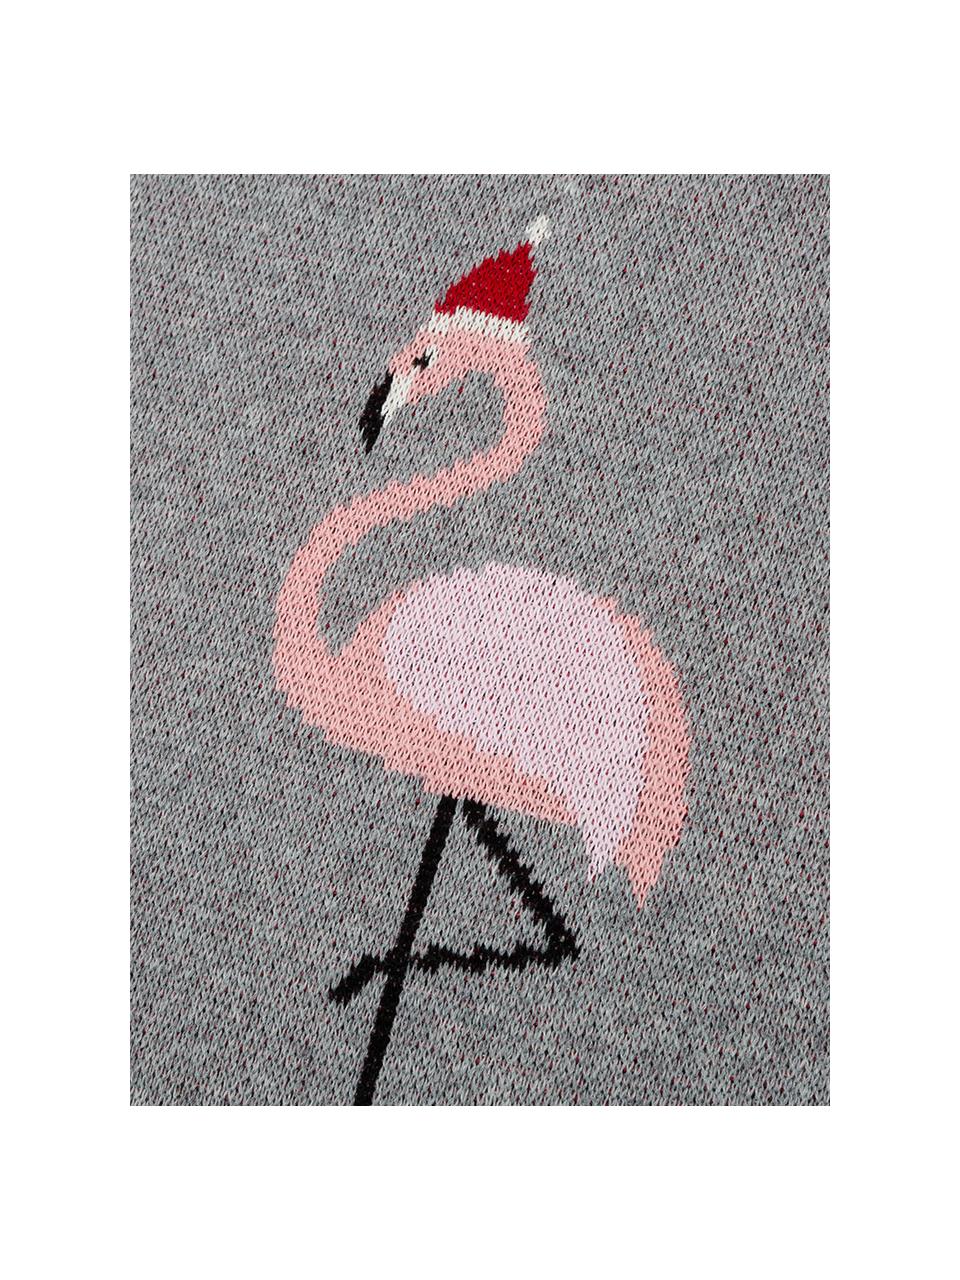 Manta doble cara tejida Flamingo, 100% algodón, Gris, multicolor, An 150 x L 200 cm